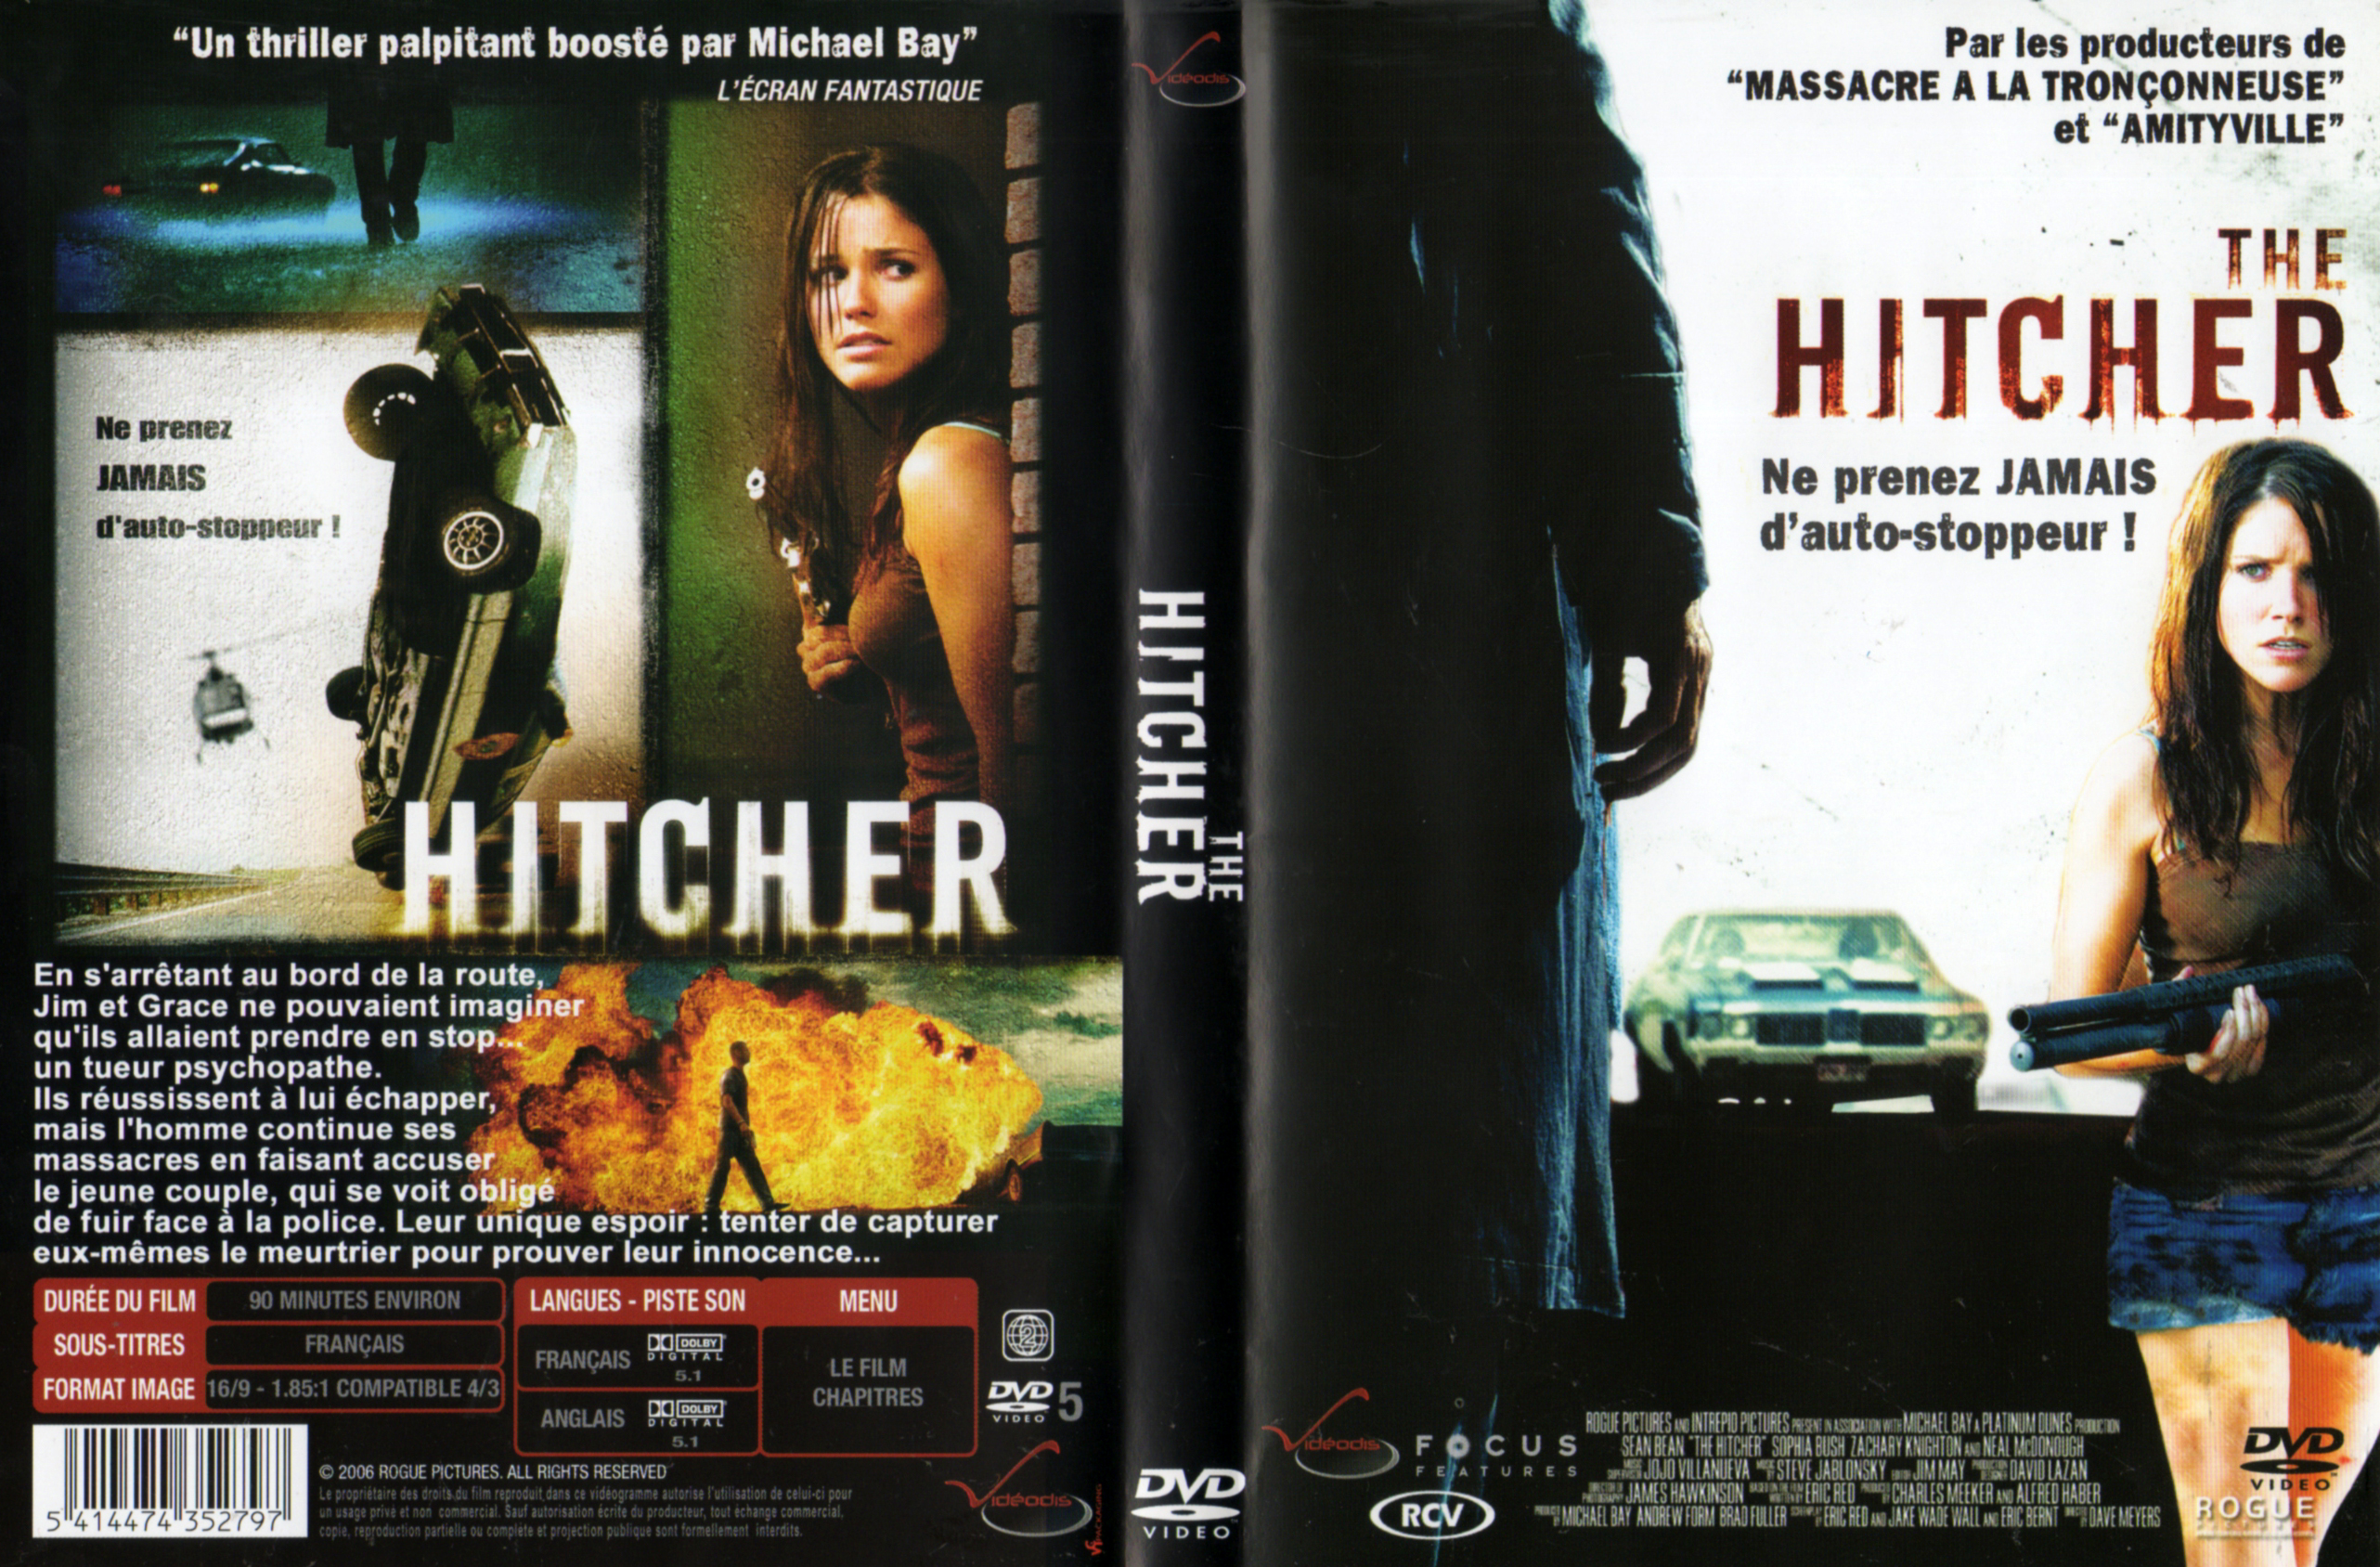 Jaquette DVD Hitcher (2007) v2